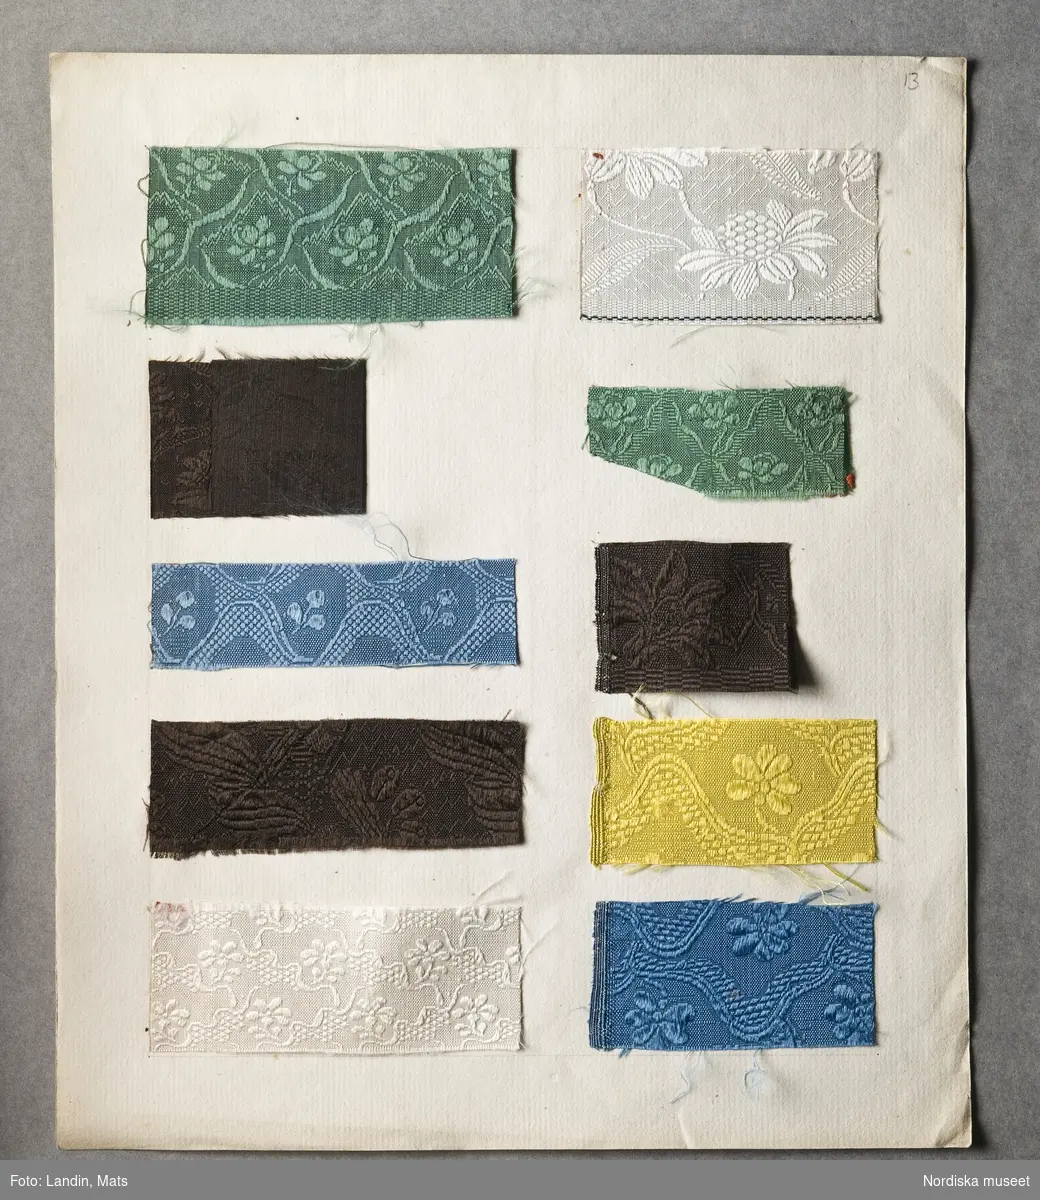 Svenska fabrikstillverkningar 1766, provsamling omfattande 385 vävda prover daterade mellan 1758 och 1775. Förvarade i en portfölj av papp klädd med marmorerat papper i grönt, omknuten med rosa sidenband s.k paduband, 11 mm brett. Innehåller 38 lösa blad med guldsnitt i kanten. Av dessa är tygprover fästade på 33 blad, 2 blad har enbart text, 3 blad är tomma; på dessa urskiljer man vattenmärke, bestående av sköld med snett band och krönt av fransk lilja. Dessutom är 2 lösa blad av annat format med tygprover inlagda i portföljen.
Titelbladet med handskriven text:" En del af Kunskapen. Sw. Fabriquerne i ordn. Saml af Ad. Modeer."
Varje blad med prover är försett med en ram av blyertsstreck inom vilka proverna klistrats. Under nästan varje prov står en kort text med blyerts, som uppger benämning på tyget, tillverkare och pris. Ibland förkortat till tre gånger utskrivet do (dito). priset uppges i daler kopparmynt. Bladen har numrerats med blyerts vid katalogiseringen i museet. Littereringen av proverna är inte utskriven här i katalogiseringen, men går uppifrån och ned, först vänster spalt, sedan höger.
Blad 1-20 innehåller 175 sidenprover.
Blad1: Text: "Furubom & Bergers, 
A. Dalmanssons, Ekstedt & Collanders, C.J. Ströms, A. Westmans, J.Silanders, S. Wieses och J.A.& S. Alnoors Fabriquer år 1766". Silkessammet, 12 prover.
Blad 2: Sidendrouguet, 7 prover
Blad 3: Blomerade sattiner, 9 prover
Blad 4: Sidendrouguet, 6 prover
Blad 5: Bordaloux, 12 prover
Blad 6: Diverse sidenprover, 11 st
Blad 7: Oskuren sammet, 5 prover+ ripslikn. prov
Blad:8 Silkeflor, 9 prover
Blad 9: Sidenprover, 3 tunn rips + 8 damast
Blad 10: Mönstrade halvsidentyger, 10 prover
Blad 11: Race de Sicile, 6 prover
Blad 12: Småmönstrade siden, "drouguets liserés", 7 prover
Blad 13: enfärg. sidendrouguet, 10 prover
Blad 14: Sidendrouguet, 10 prover
Blad 15: Sidensatin, 10 prover
Blad 16: "Slät sattin, sarge, blommerad sarge", 6 st
Blad 17: "Carlé, floret tyg" mm. 10 prover
Blad 18: Randig och rutig flerfärgad taft, 6 prover
Blad 19: Sidentaft, 12 prover
Blad 20: Sammet och plysch
Blad 21-30 innehåller 141 ylleprover tillverkade i Stockholm 1766.
Blad 21-22 Kamgarnsprover, 21+21 st, olika kvalitetsbenämningar.
Blad 23. Tvåfärgad ylledamast, 6 st
Blad 24: Enfärgad ylledamast, 7 prover
Blad 25: Kamgarnsvävnader, randiga, 6 st
Blad 26: diverse ylletyger, 7 st.
Blad 27-29: Kläde, 21 prover på vardera blad,
Blad 30: Yllevävnader fr. J.W.Helledays Fabrique, 7 st
Blad 31: Ylletyger, tillv. i Köpenhamn 1758
Blad 32: Kamlotter, 11 prover fr. Köpenhamn
Blad 33: Diverse prover, 9 st belönade av Patriotiska Sälllskapet.
Blad 34-37: utan tygprover.
Blad 38: Löst dubbelvikt ark med kamgarns- och sidenprover, uppenbarligen engelsk tillverkning, 22 prover schalonger och sattiner.
Blad 39: Löst dubbelvikt ark m. 2 grova vävnadsprov av nässelfiber resp. humlerevor. "Inl. af doctor Sparrman".
Proverna samlade och uppklistrade av Patriotiska Sällskapets sekreterare Adolf Modéer, 1766, som prov på vad svenska väverier kunde tillverka. Som ett led i en merkantilistisk strävan att stävja import och uppmuntra slöjder, kunnighet och lyx för att främja landets ekonomi. Att det är han själv som klistrat in de små proverna och skrivit in uppgifterna bevisas av att de är skrivna med samma vackra och lättlästa handstil som Patriotiska sällskapets stadgar 1772. För att främja textiltillverkningen var det rimligt att undersöka på vilken nivå den stod, vad som presterades. Kanske var detta Modéers syfte. De enskilda fabrikerna tycks inte ha varit det viktigaste, det var de olika produkterna, hur de var vävda, mönstrade och vad de kostade som han vill illustrera. Han för ihop samma slags vävnader från flera olika fabriker, och genast ser man att konkurrensen varit stenhård. Så lika är ofta proverna både till kvalitet, mönster och färg. Hur Modéer tänkt sig att hans samling skulle användas är okänt.
Genomgångna av Elisabet Hidemark 2007.
/Berit Eldvik 2008-03-19